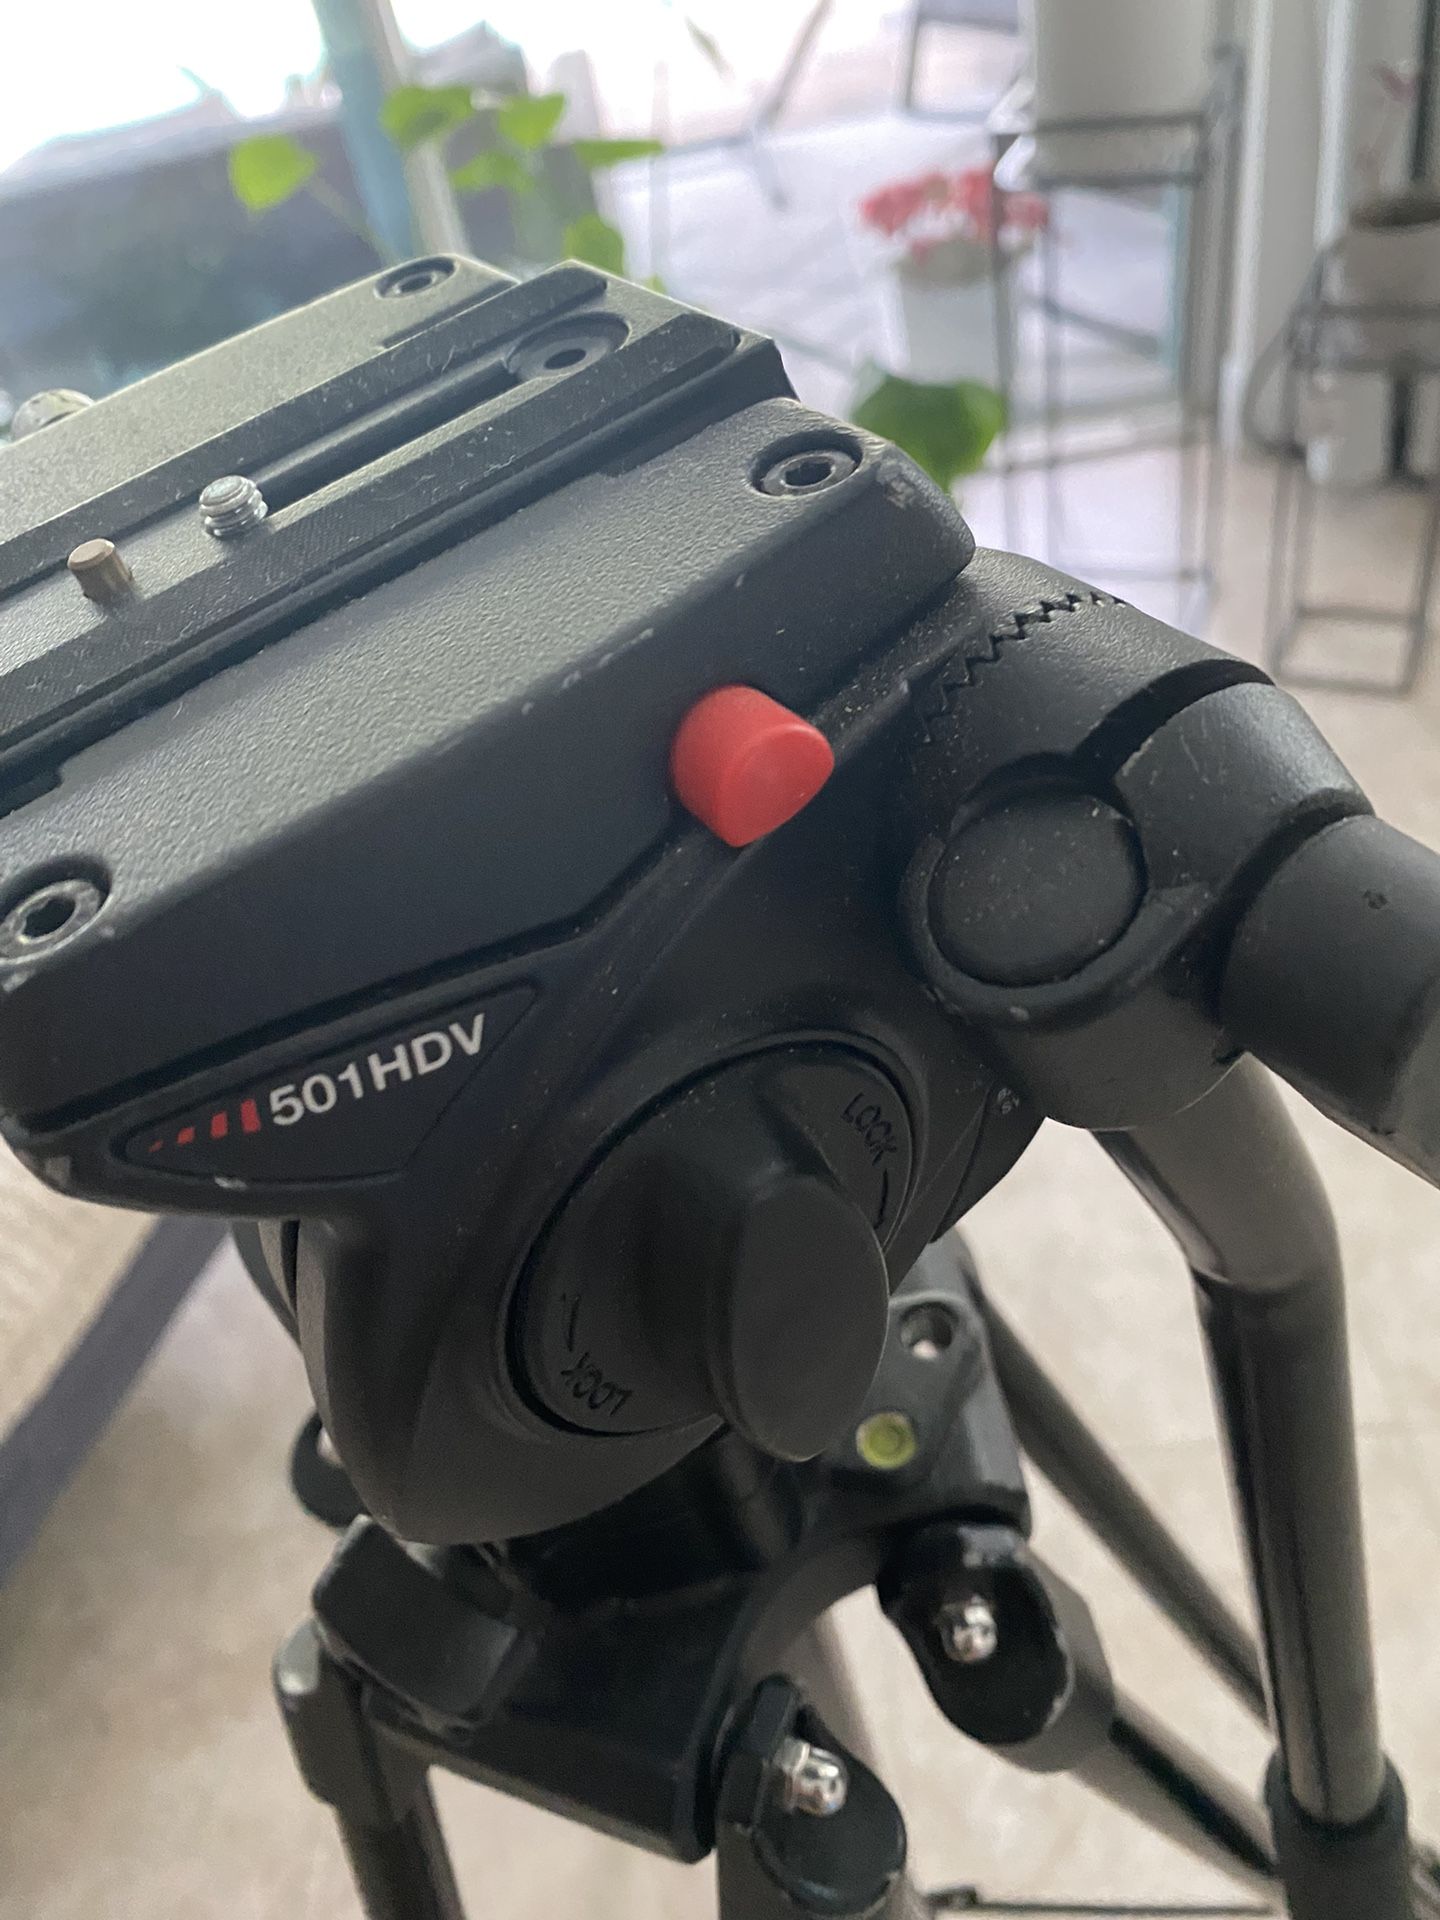 Manfrotto 501 HDV professional camera tripod system 